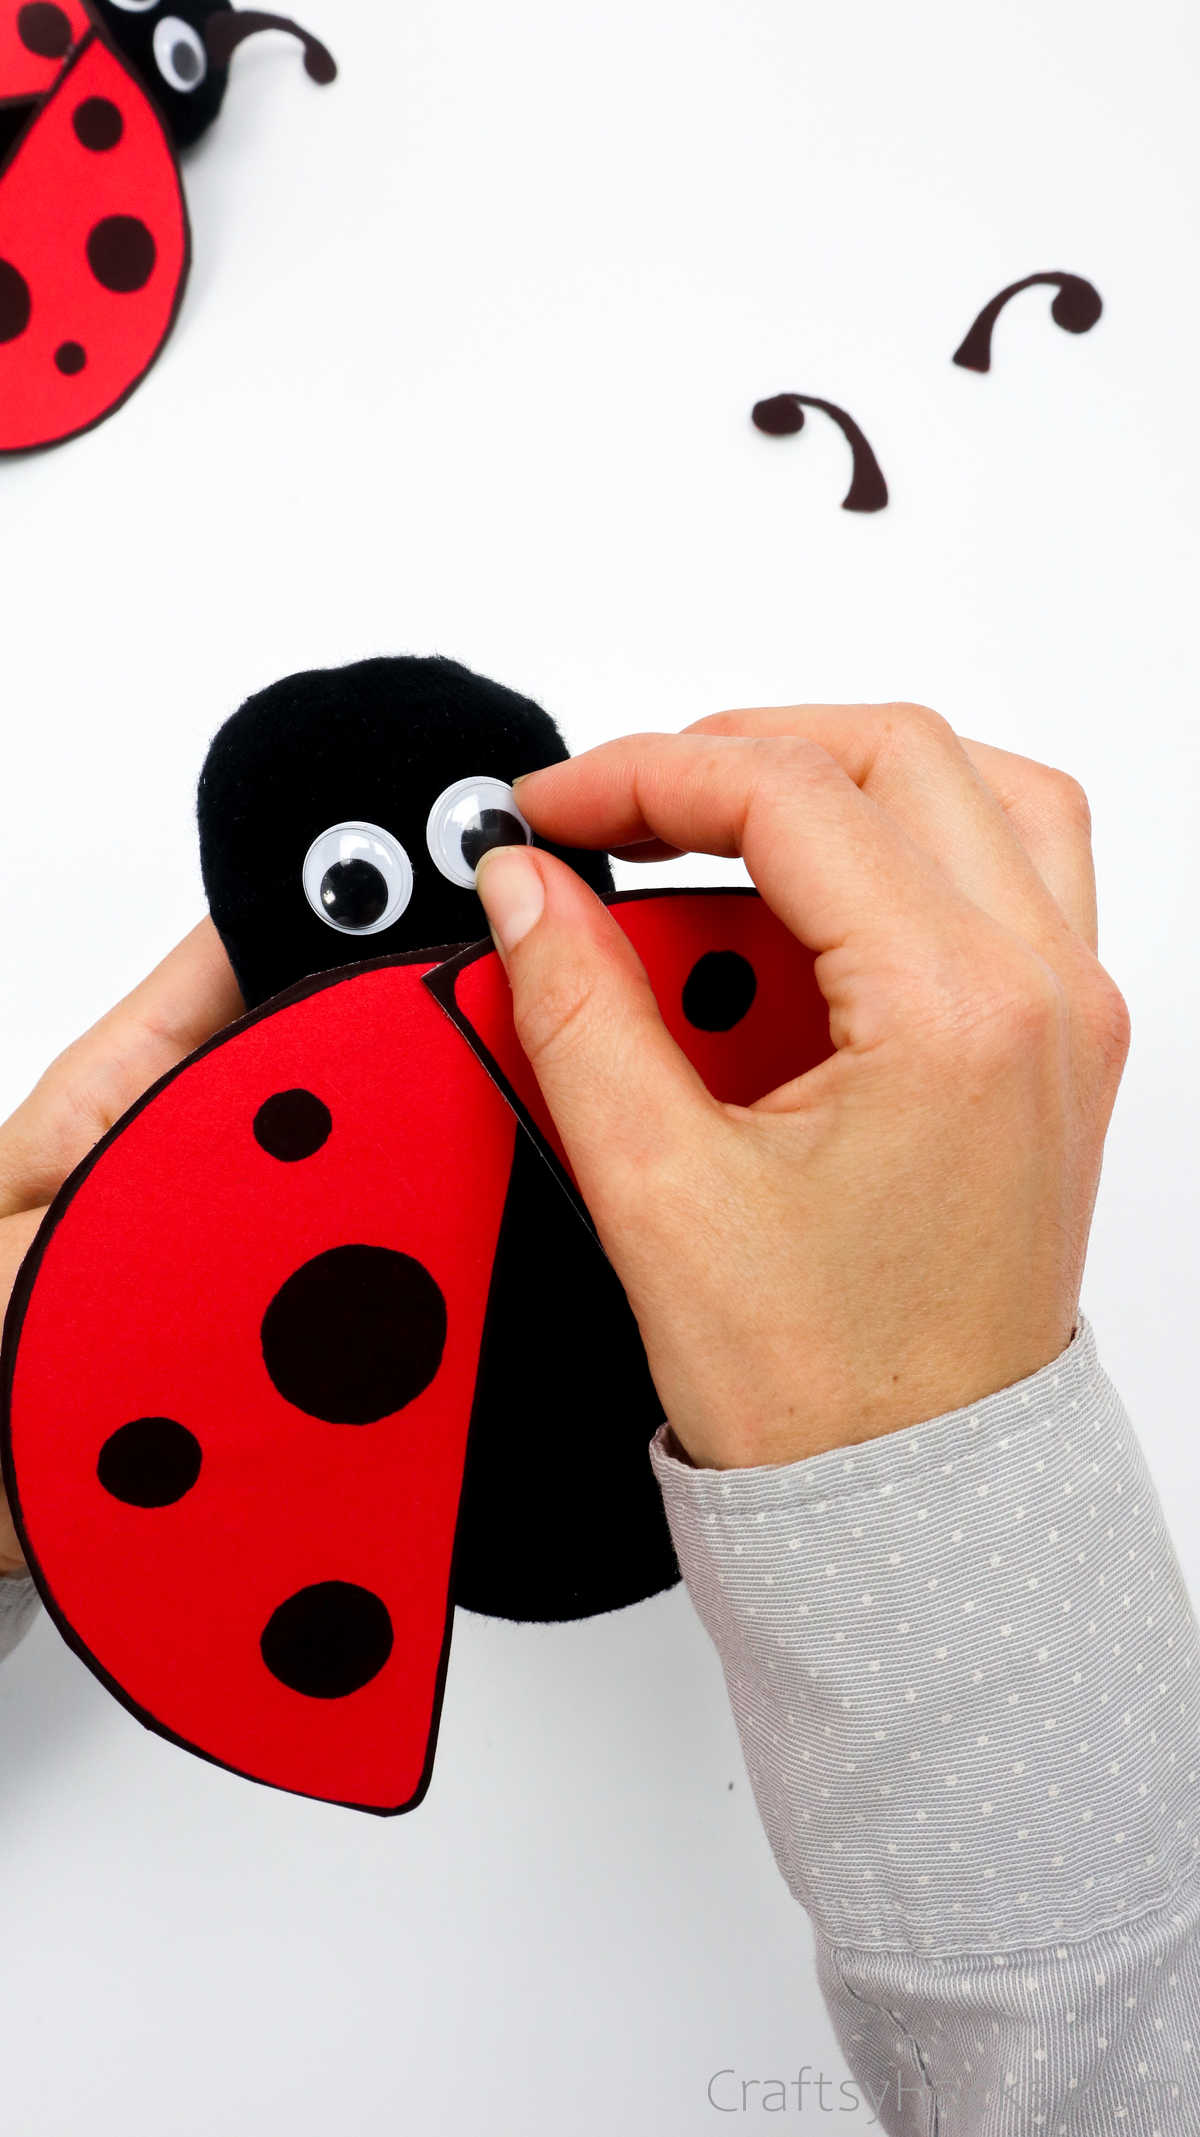 glueing eyes to ladybug